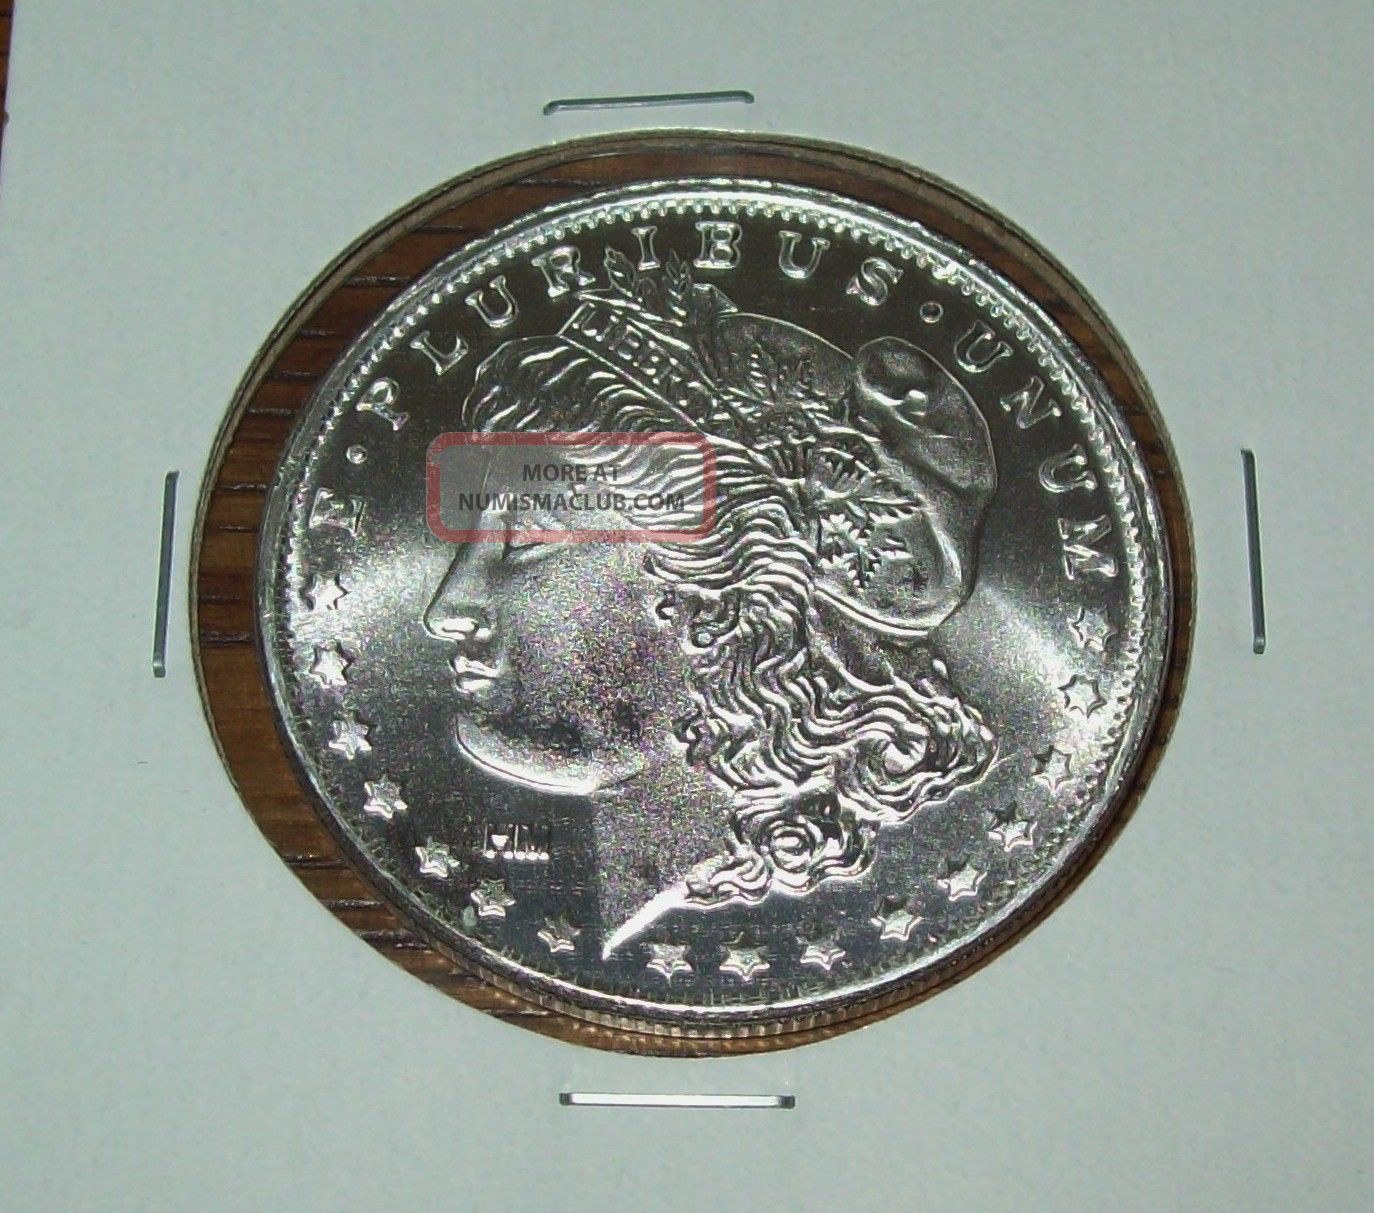 Silver Eagle Morgan Dollar 1 Troy Oz. . 999 Fine Silver Round One Ounce Bullion